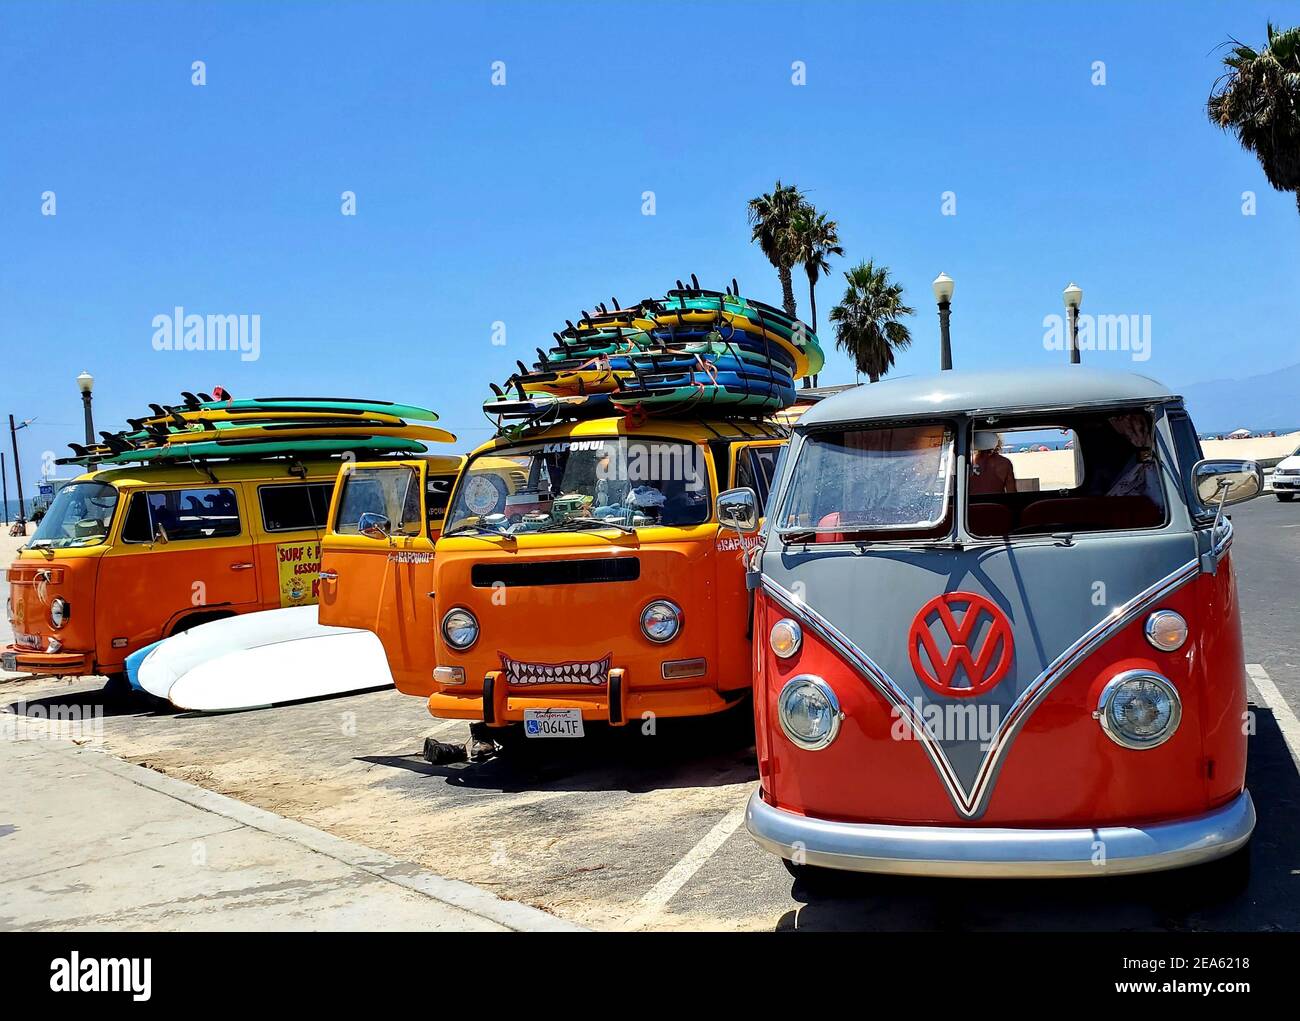 beach bus Alamy -Bildmaterial Vw surf Auflösung hoher und – in -Fotos